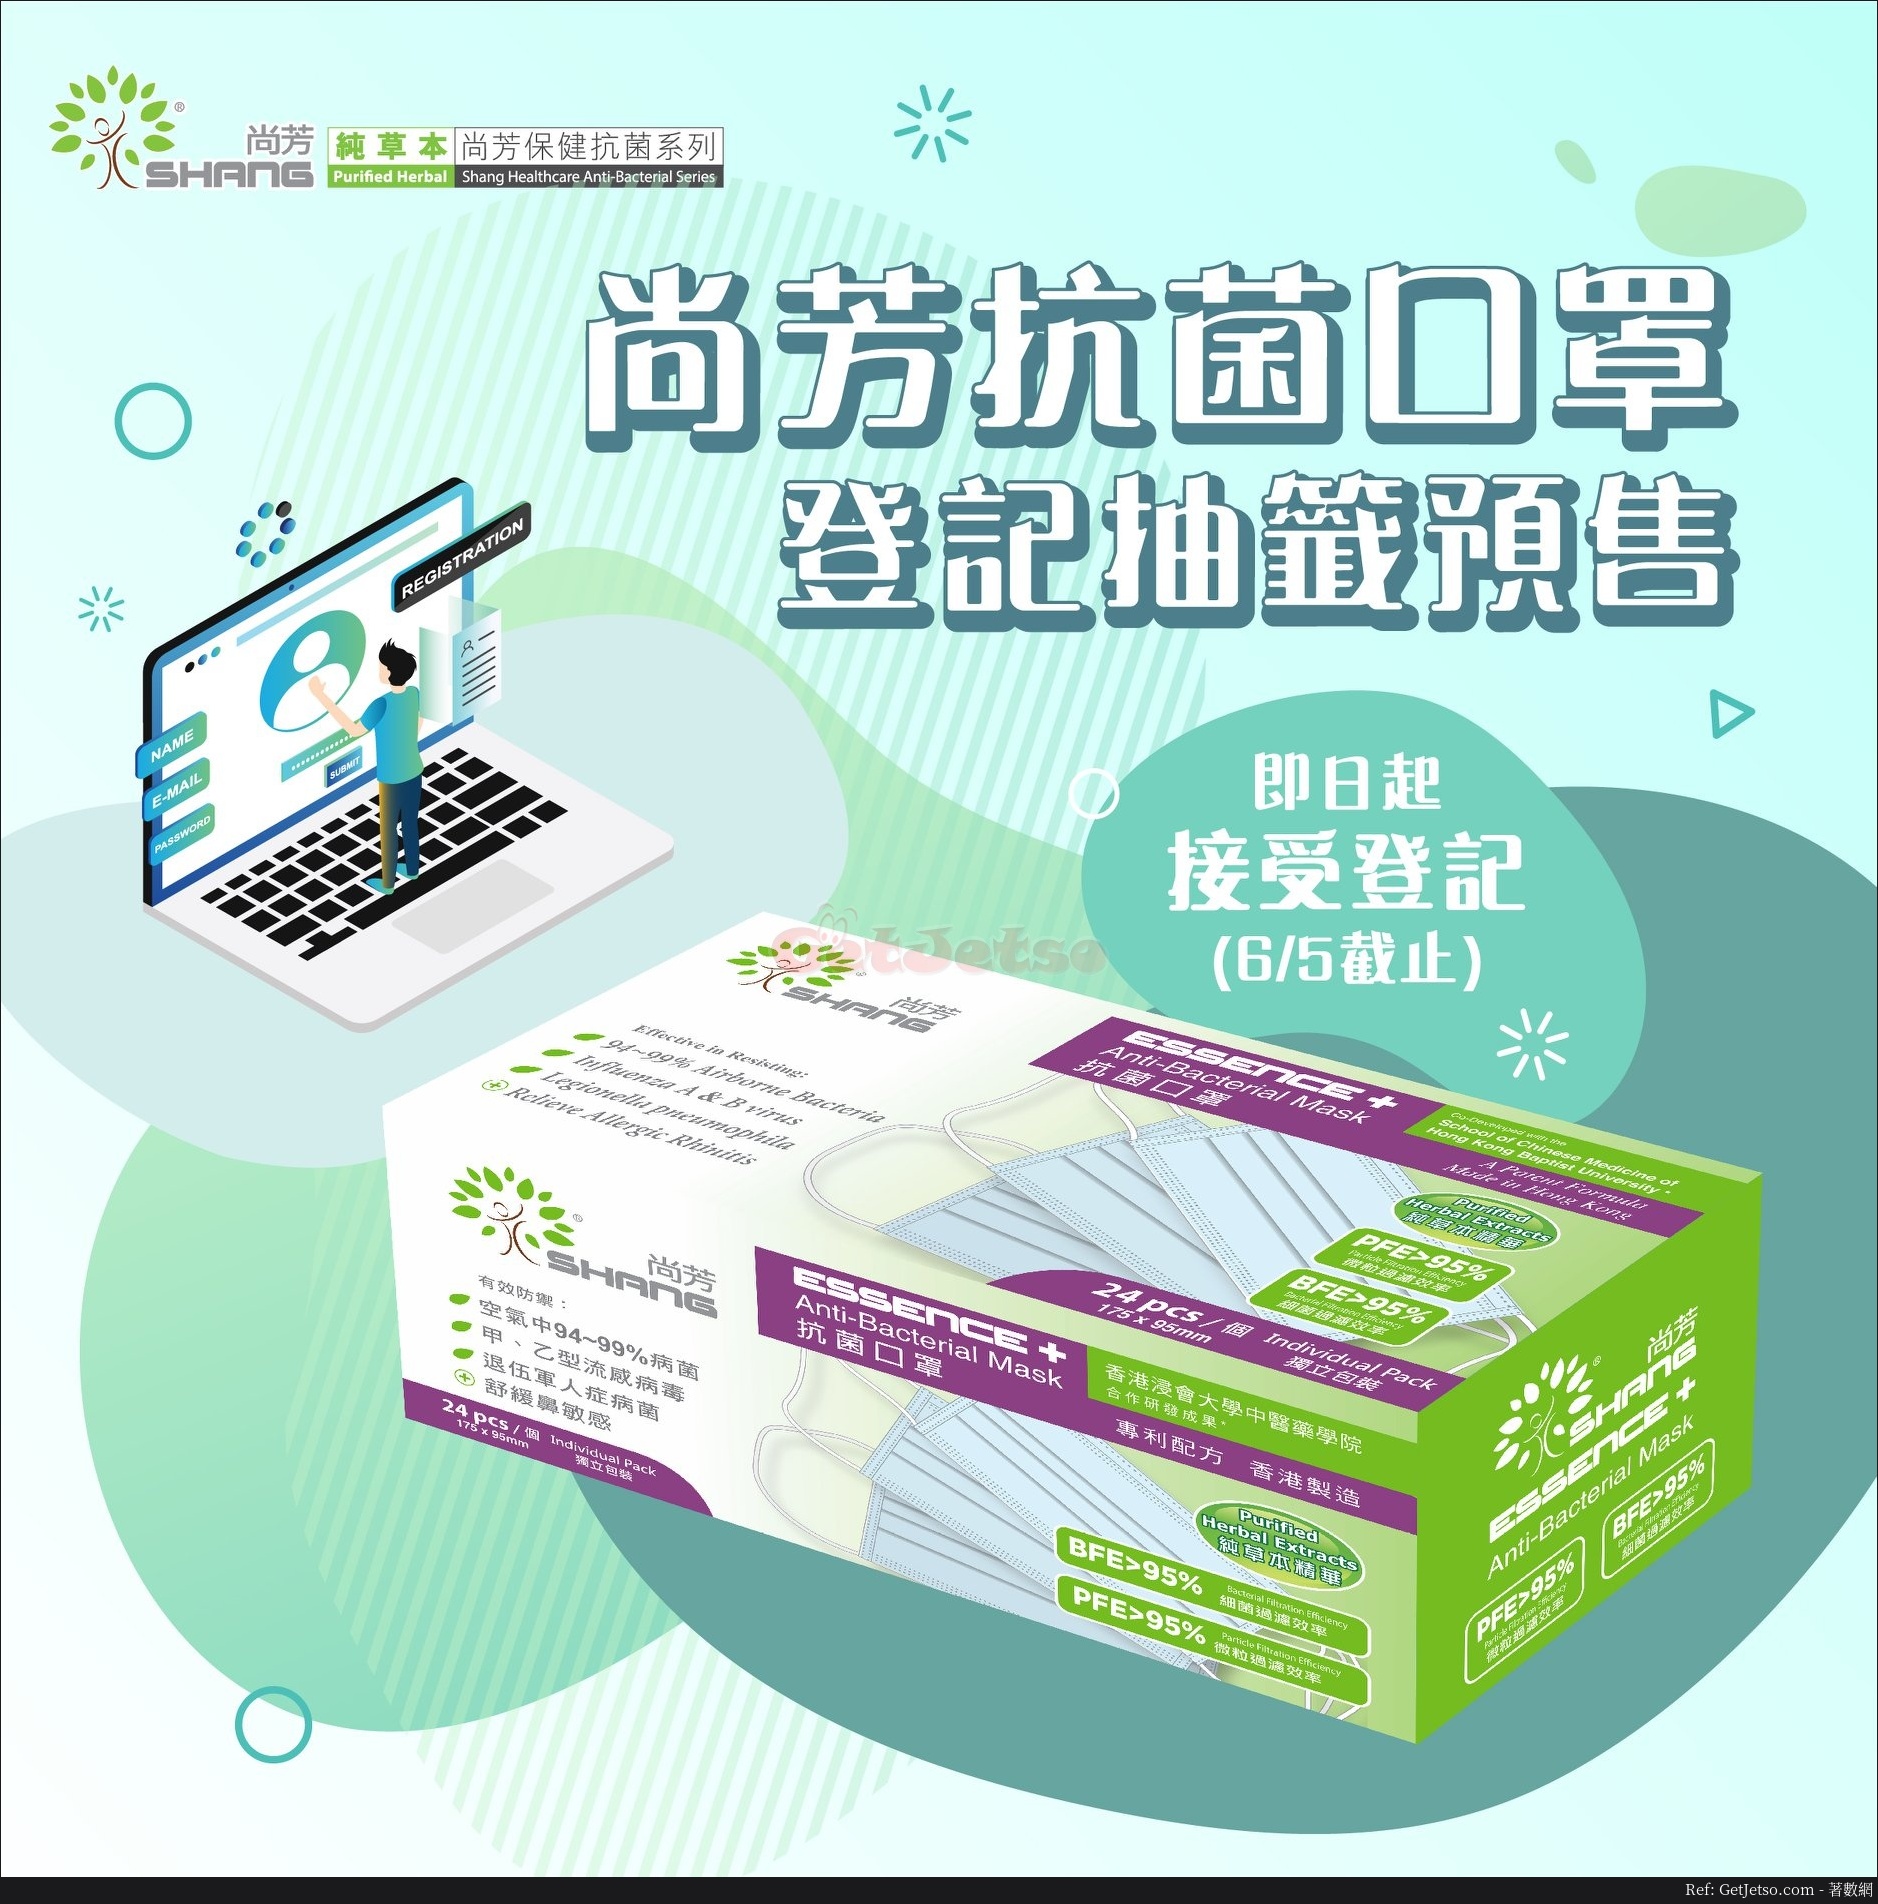 Shang 尚芳保健網上預售抽籤口罩2兩盒48個(至20年5月6日)圖片1